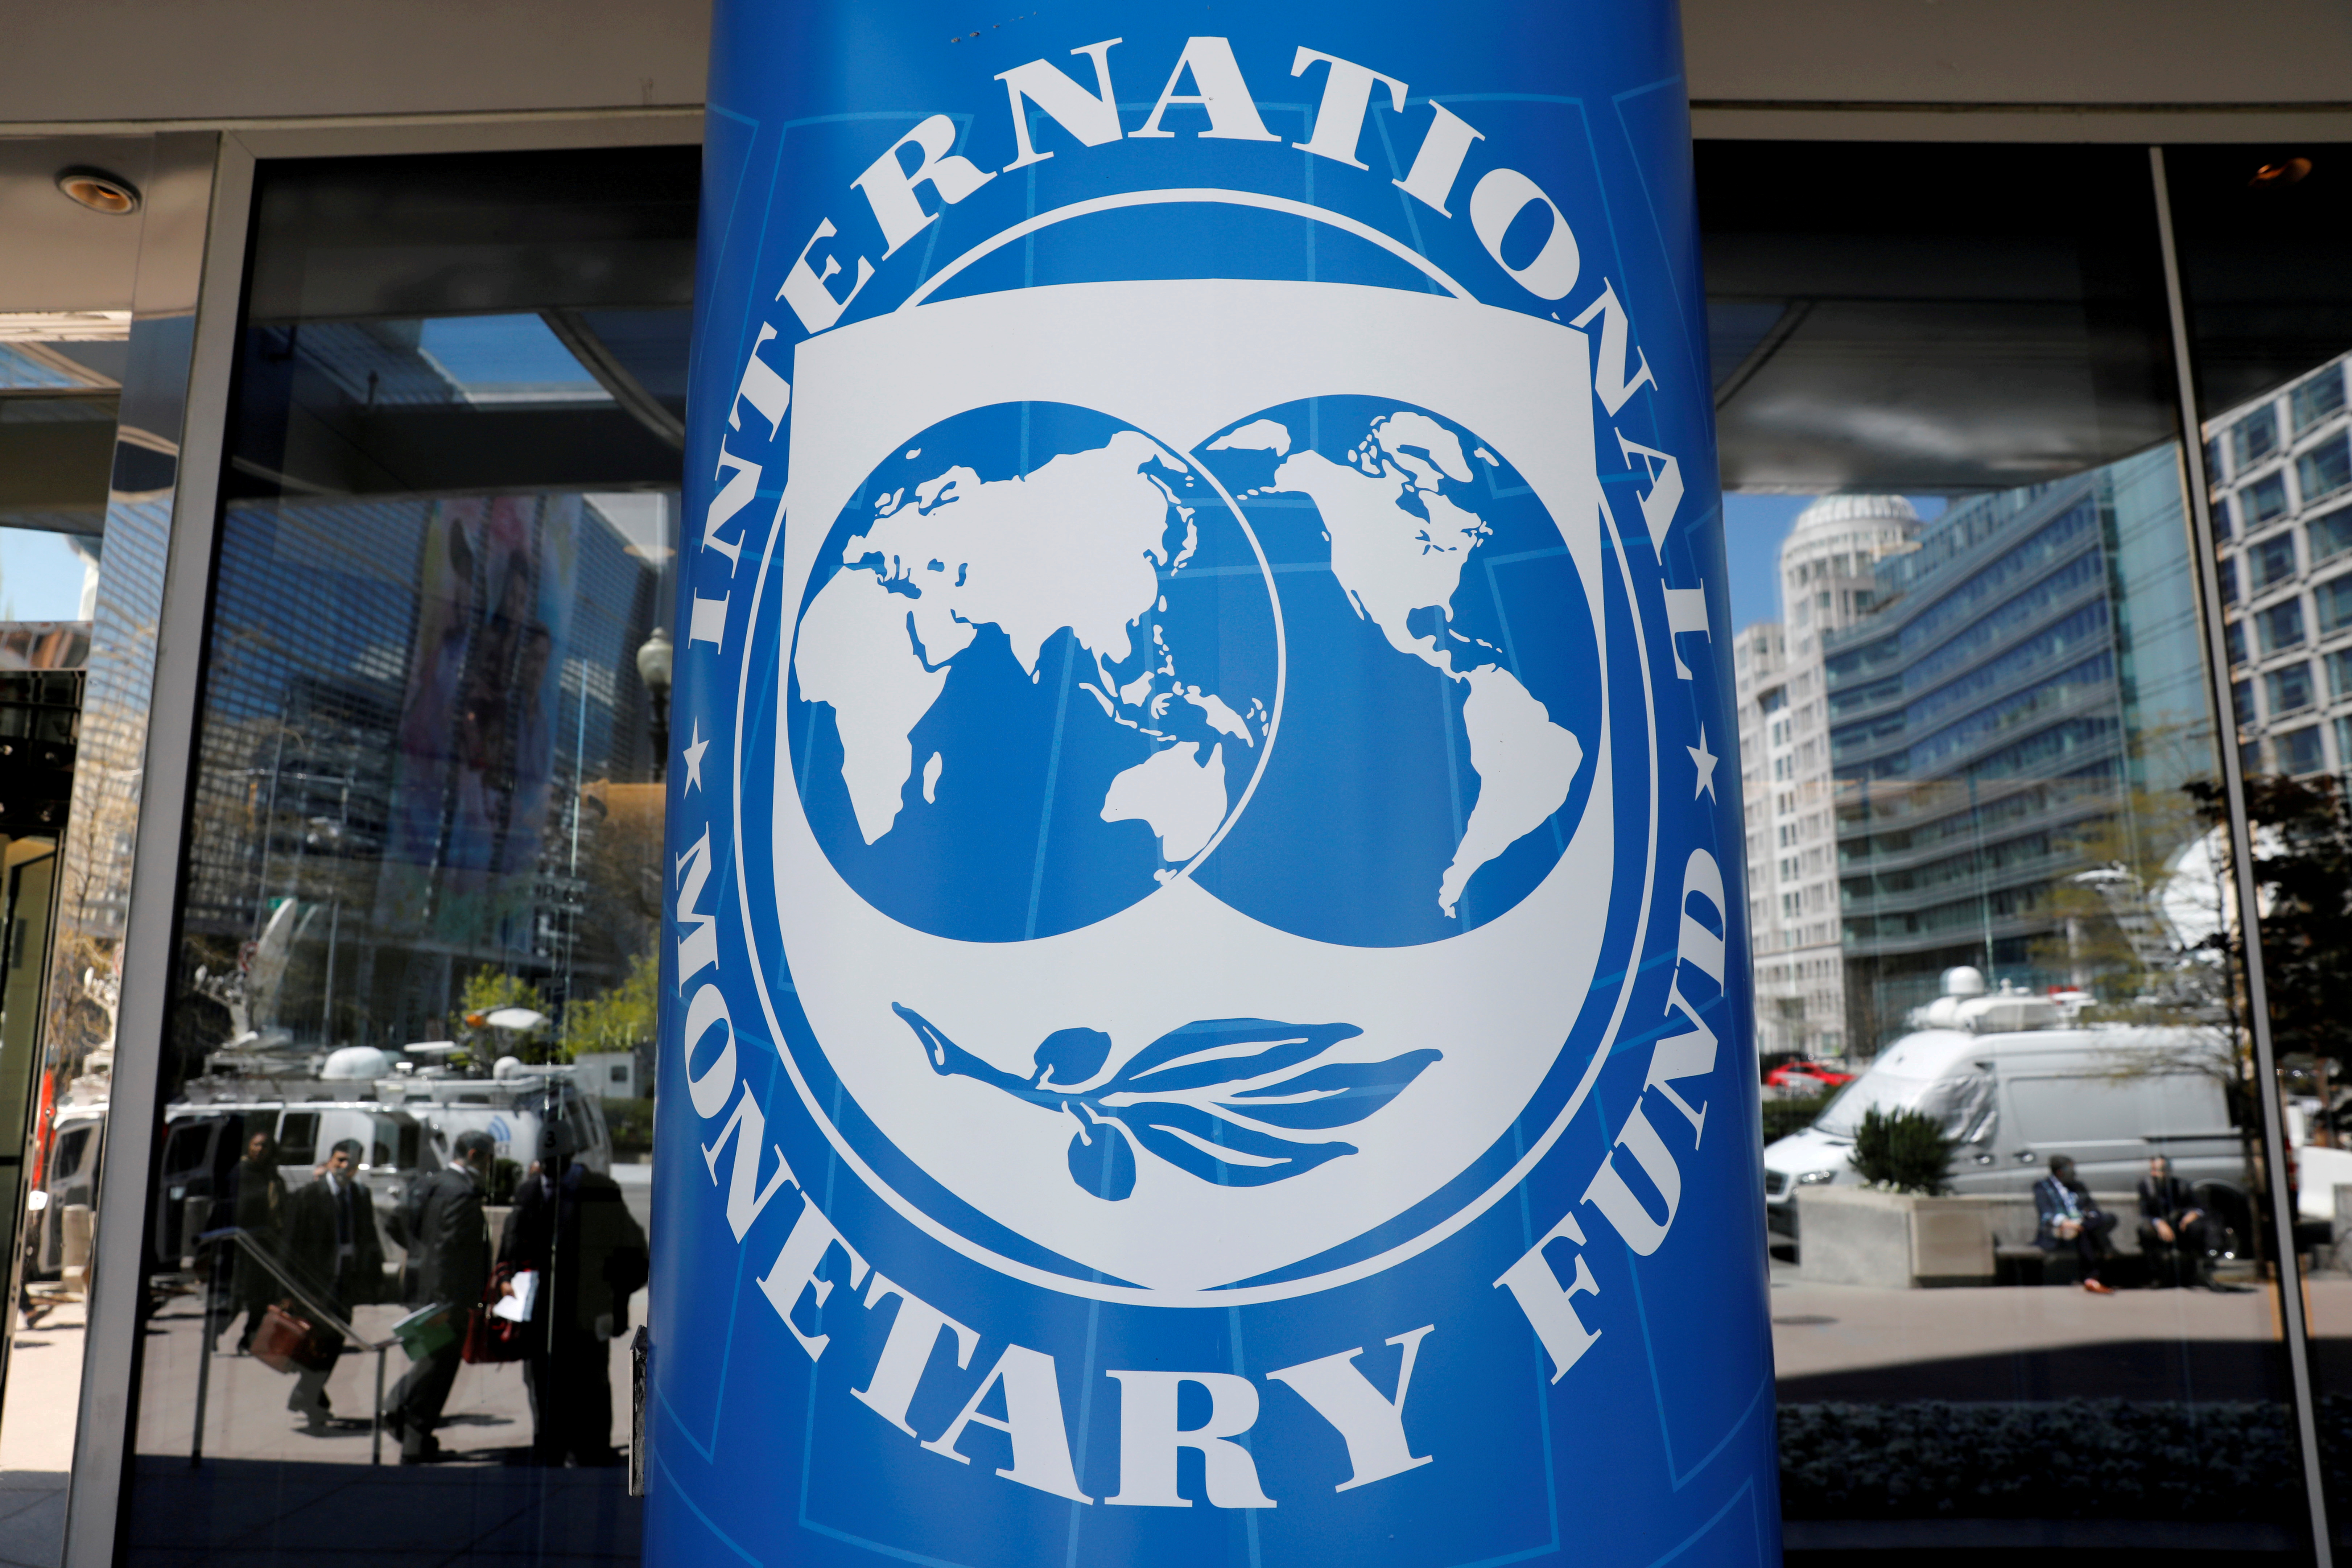 El FMI aún no determinó qué países estarán incluidos en el reparto “secundario” de derechos especiales de giro desde las economías avanzadas hacia naciones “vulnerables” REUTERS/Yuri Gripas/File Photo